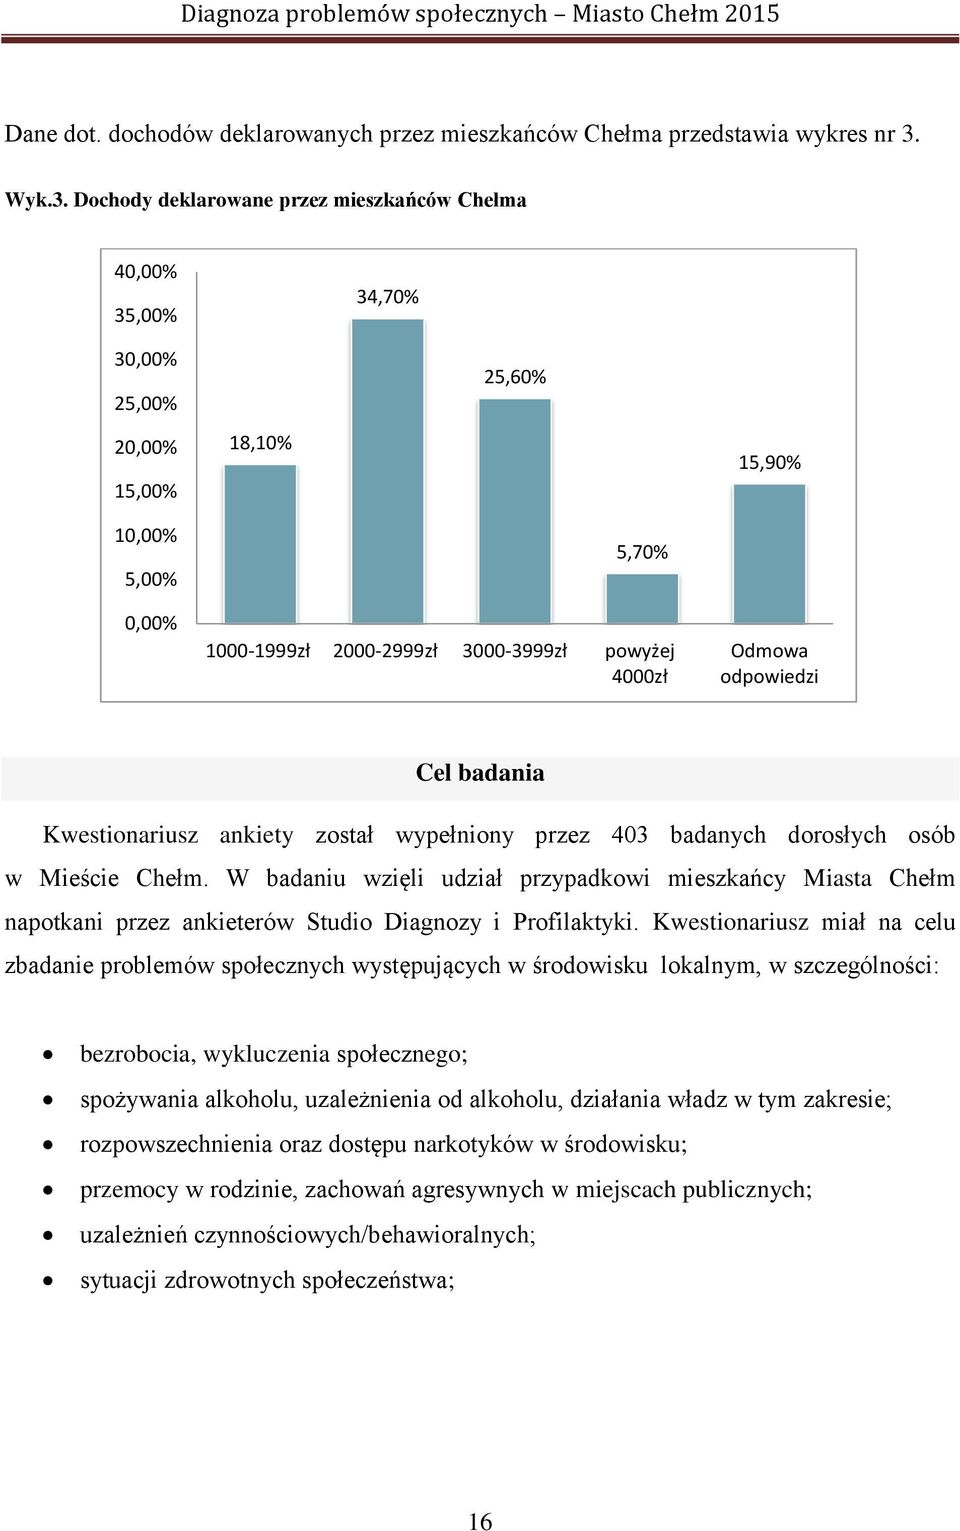 Dochody deklarowane przez mieszkańców Chełma 40,00% 35,00% 34,70% 30,00% 25,00% 20,00% 15,00% 18,10% 25,60% 15,90% 10,00% 5,00% 0,00% 5,70% 1000-1999zł 2000-2999zł 3000-3999zł powyżej 4000zł Odmowa